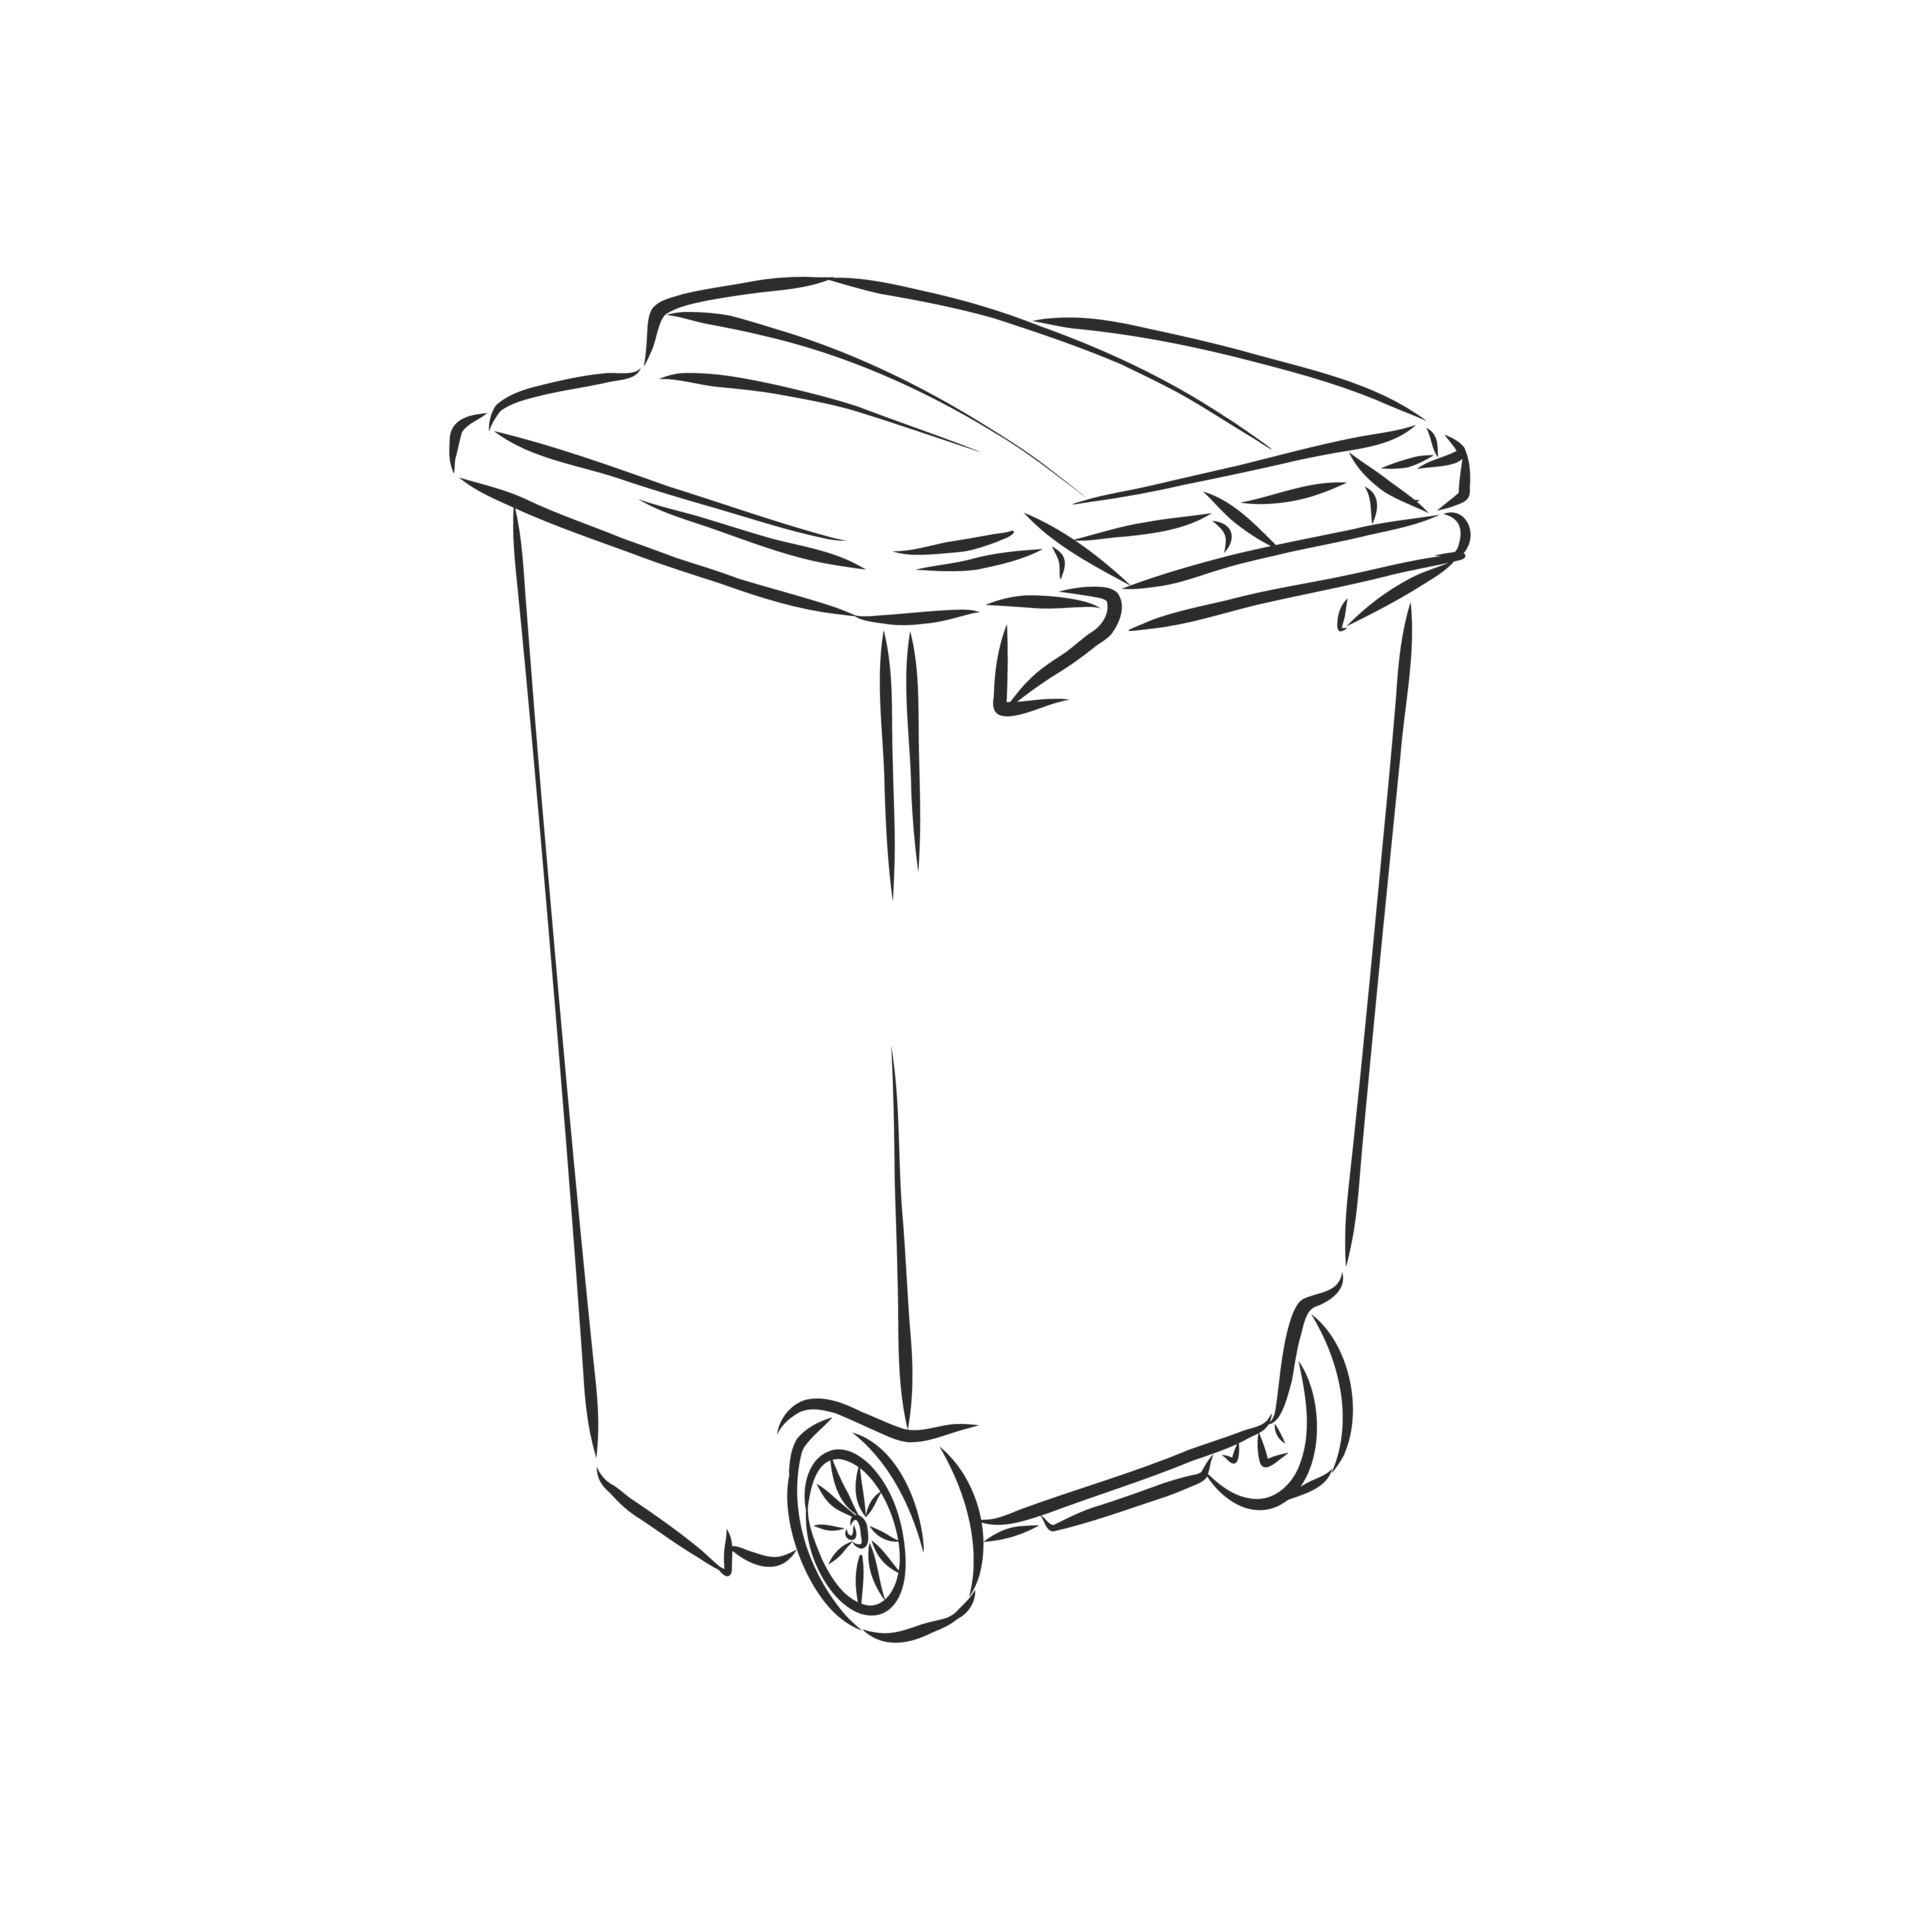 Premium Vector  Sketched empty trash bin desktop icon trash can vector  sketch illustration